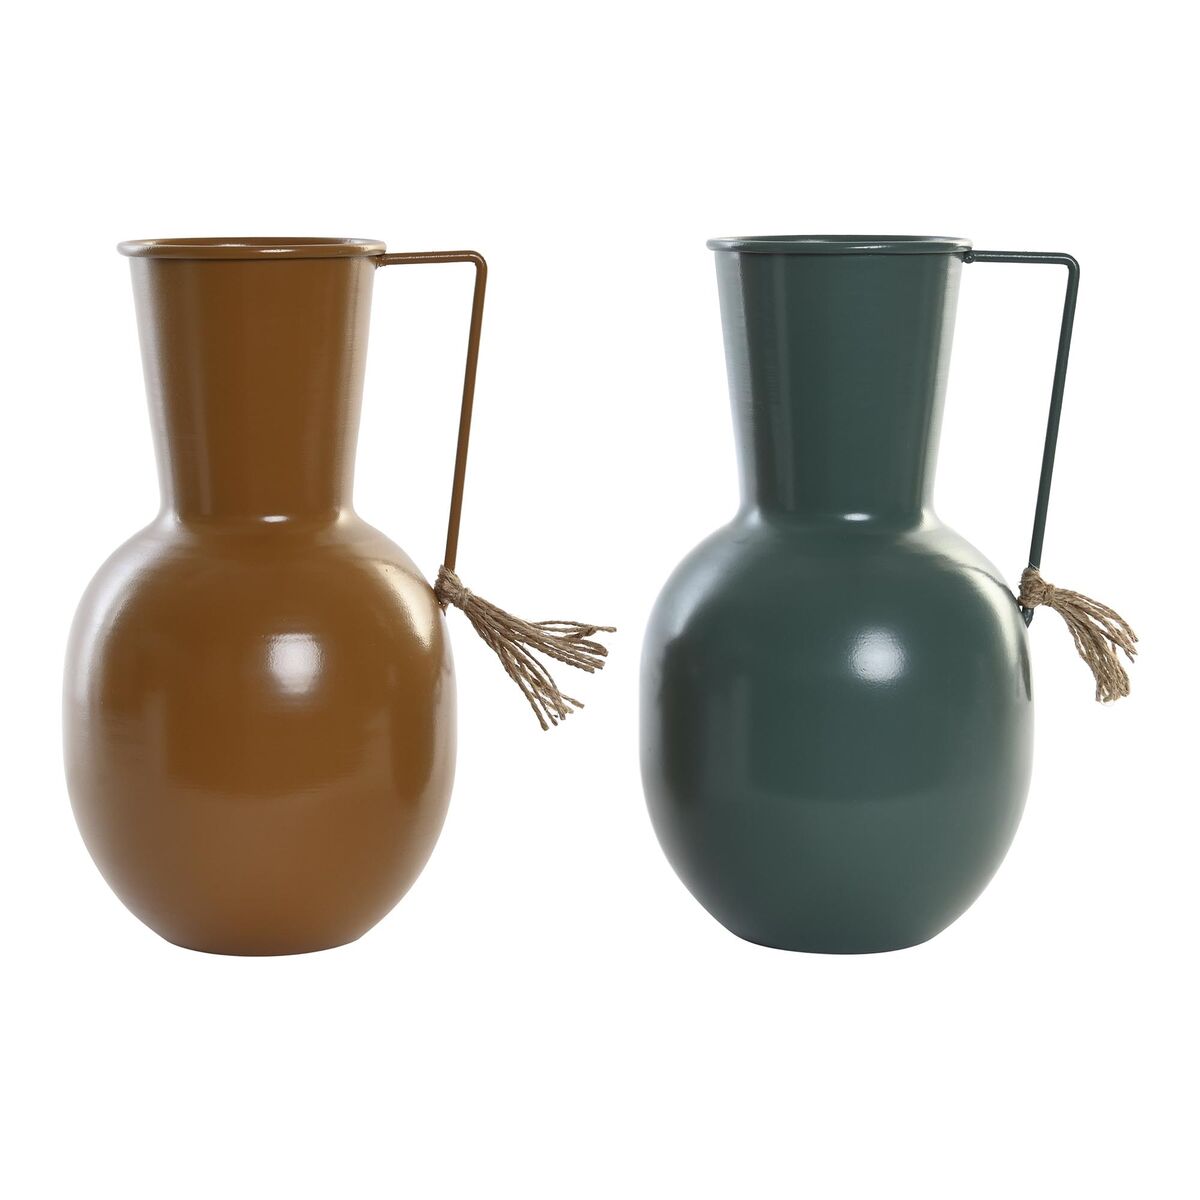 Vases Atypiques en Métal Moutarde et Vert (2 Unités)